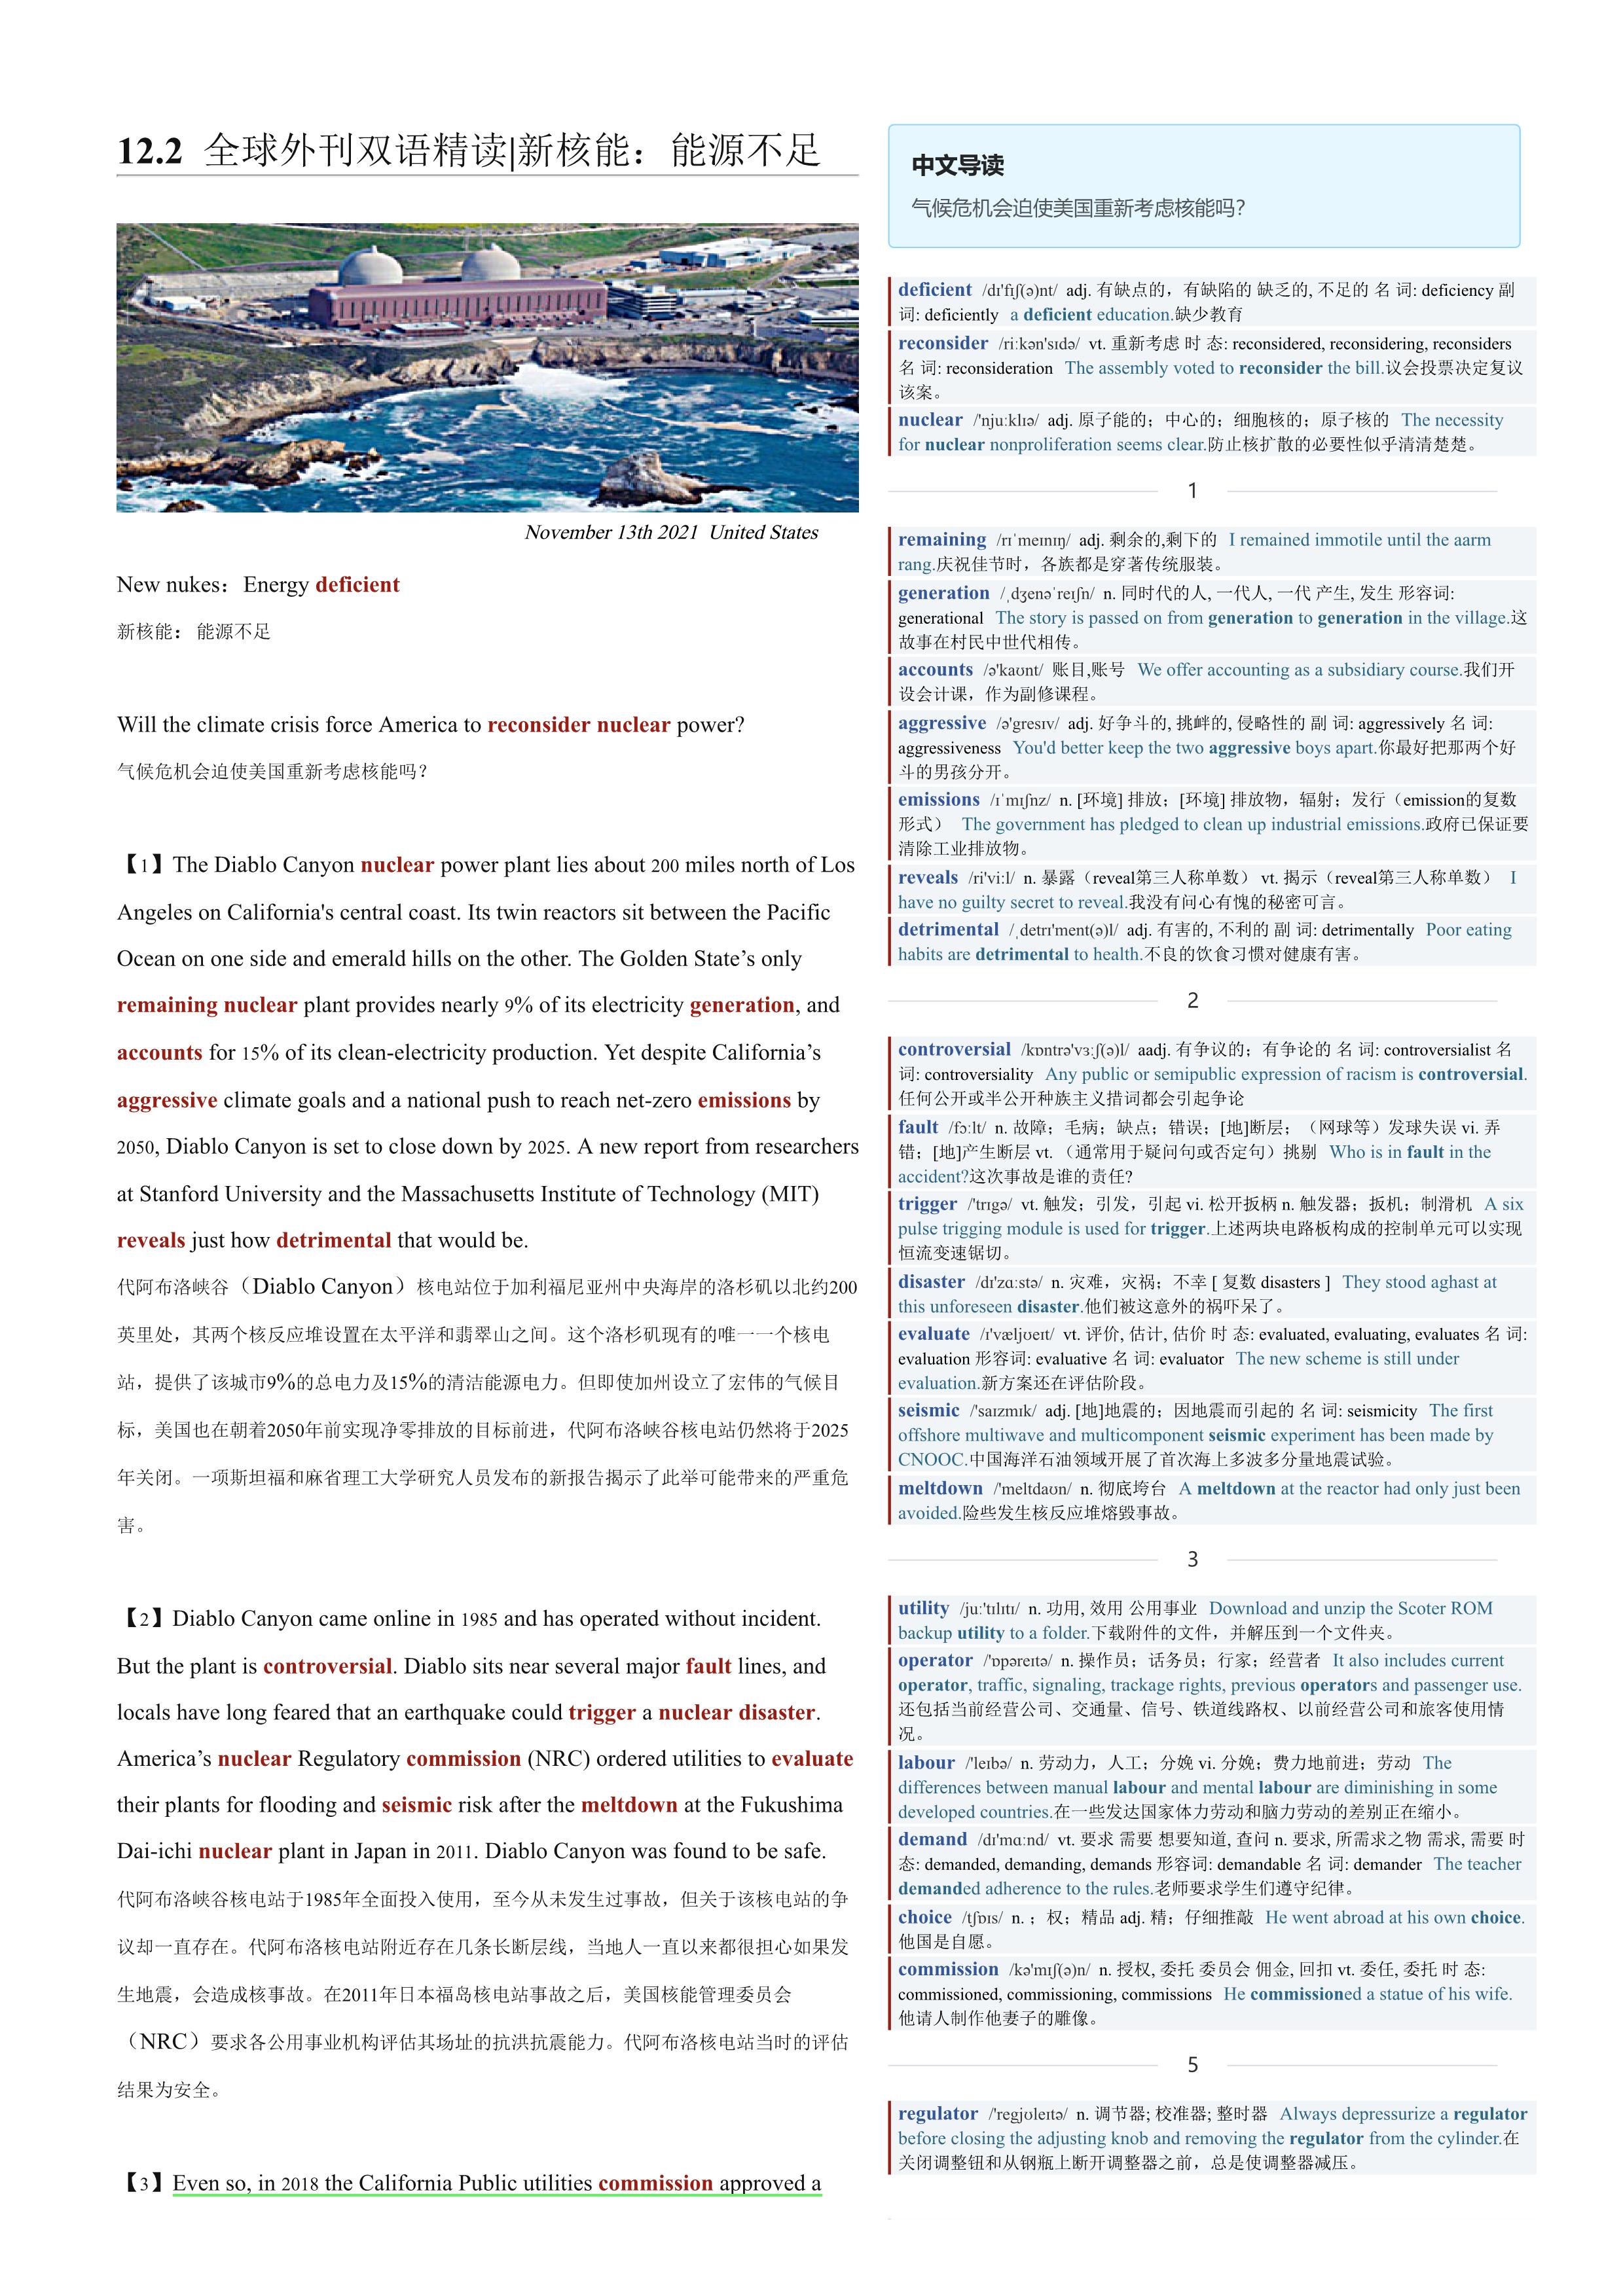 2021.12.02 经济学人双语精读丨新核能：能源不足 (.PDF/DOC/MP3)